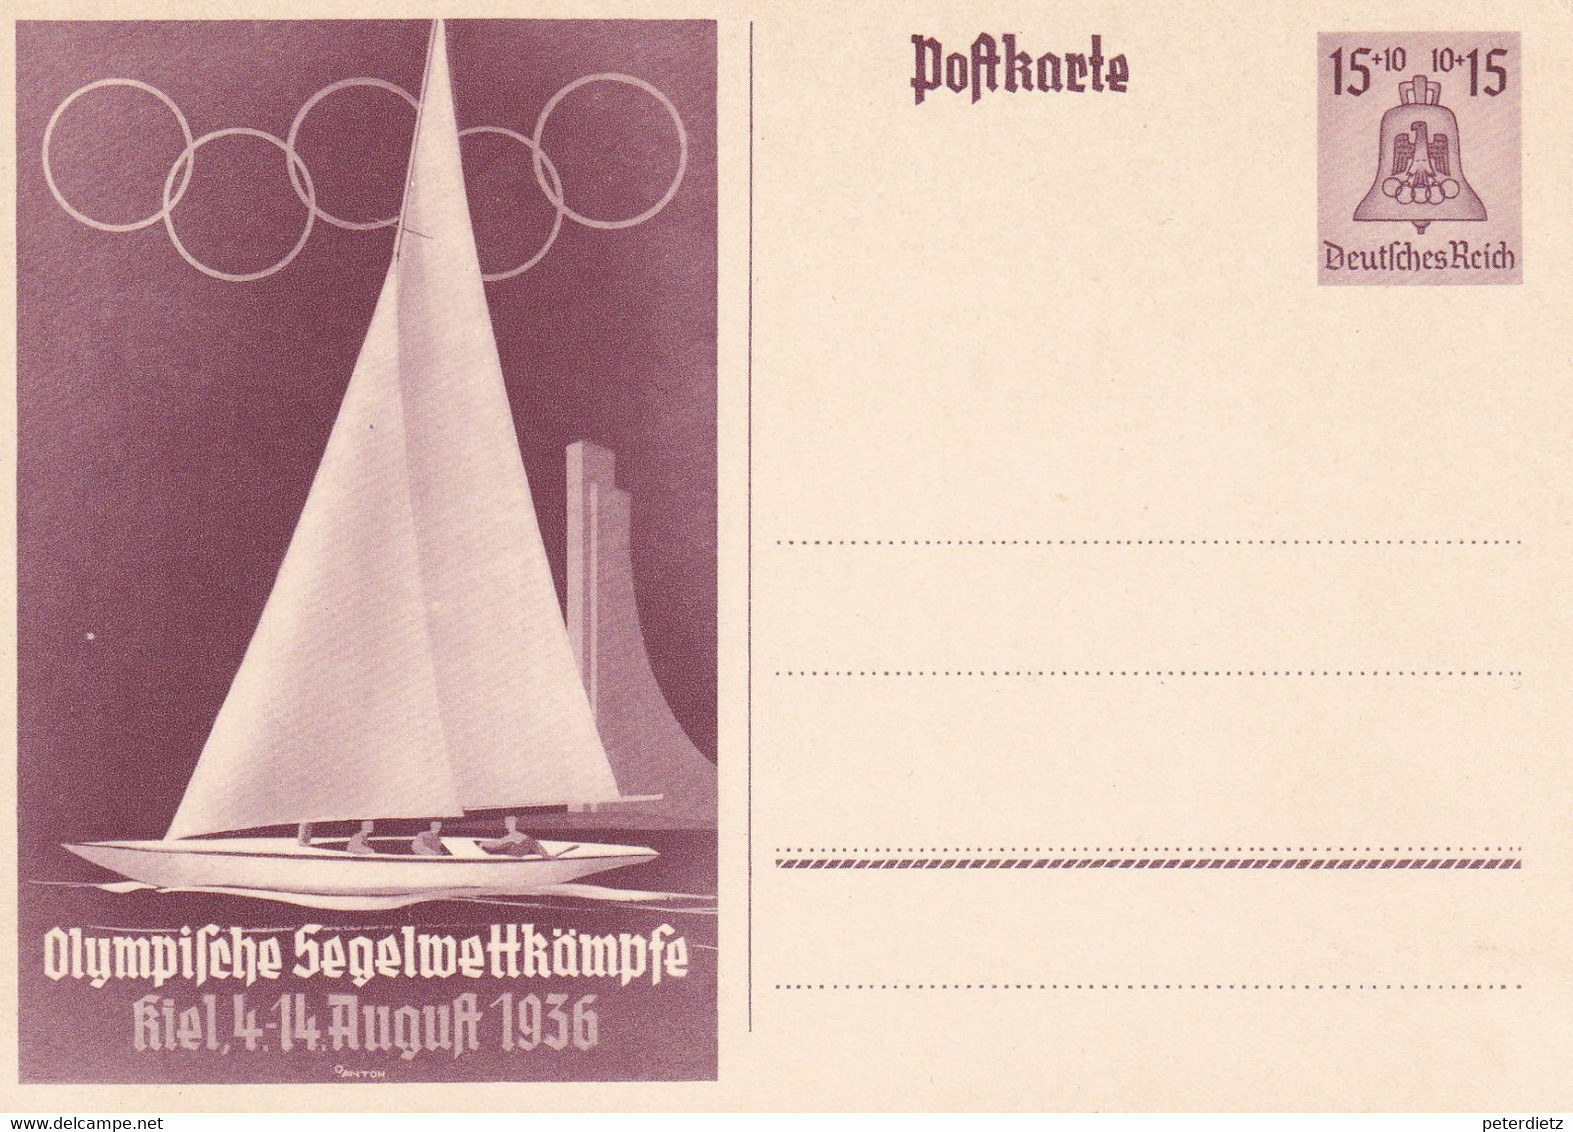 1936 BERLIN OLYMPICS GERMANY POSTCARD 15 PF SEGELWETTKÄMPFE KIEL FINE UNUSED - Ete 1936: Berlin